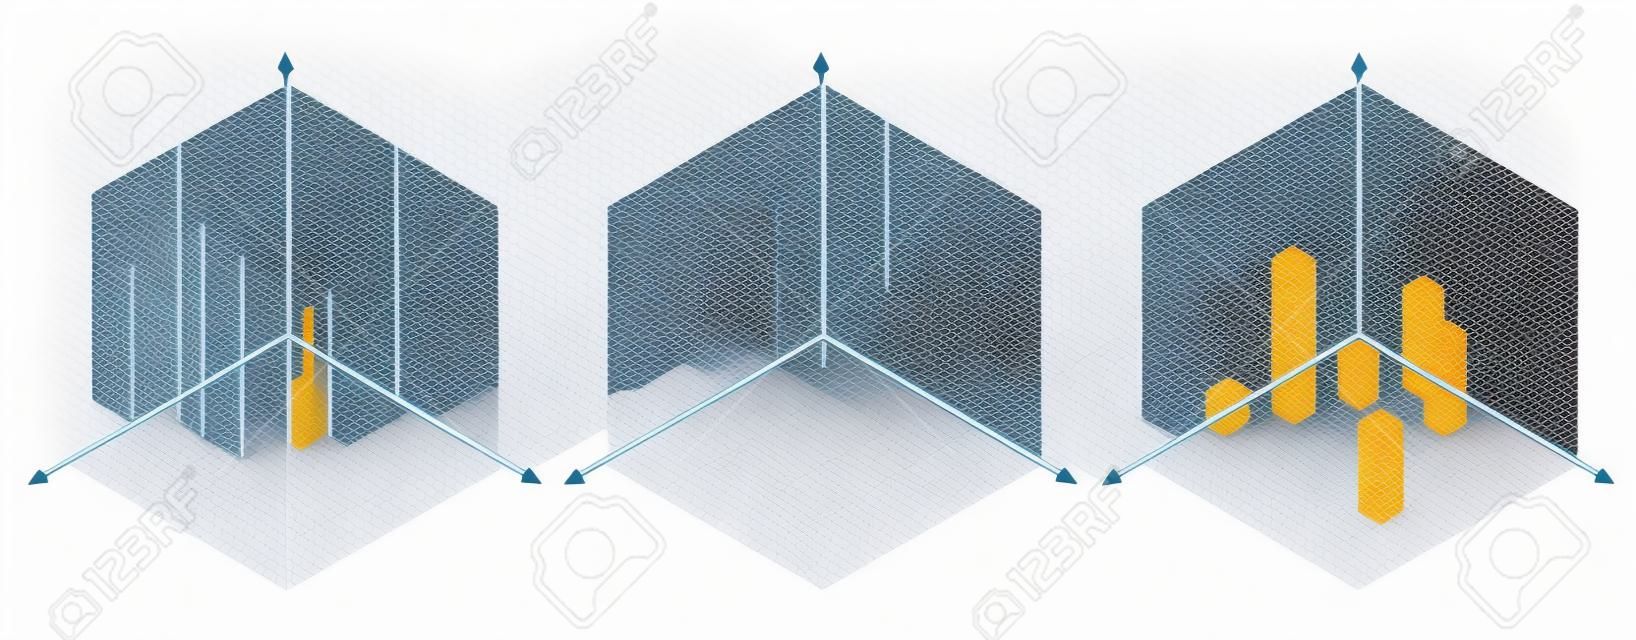 Az izometrikus rajz harminc fokos sarkot alkalmaz az oldalára. A kocka ellentétes. Isometrikus rácsvektor